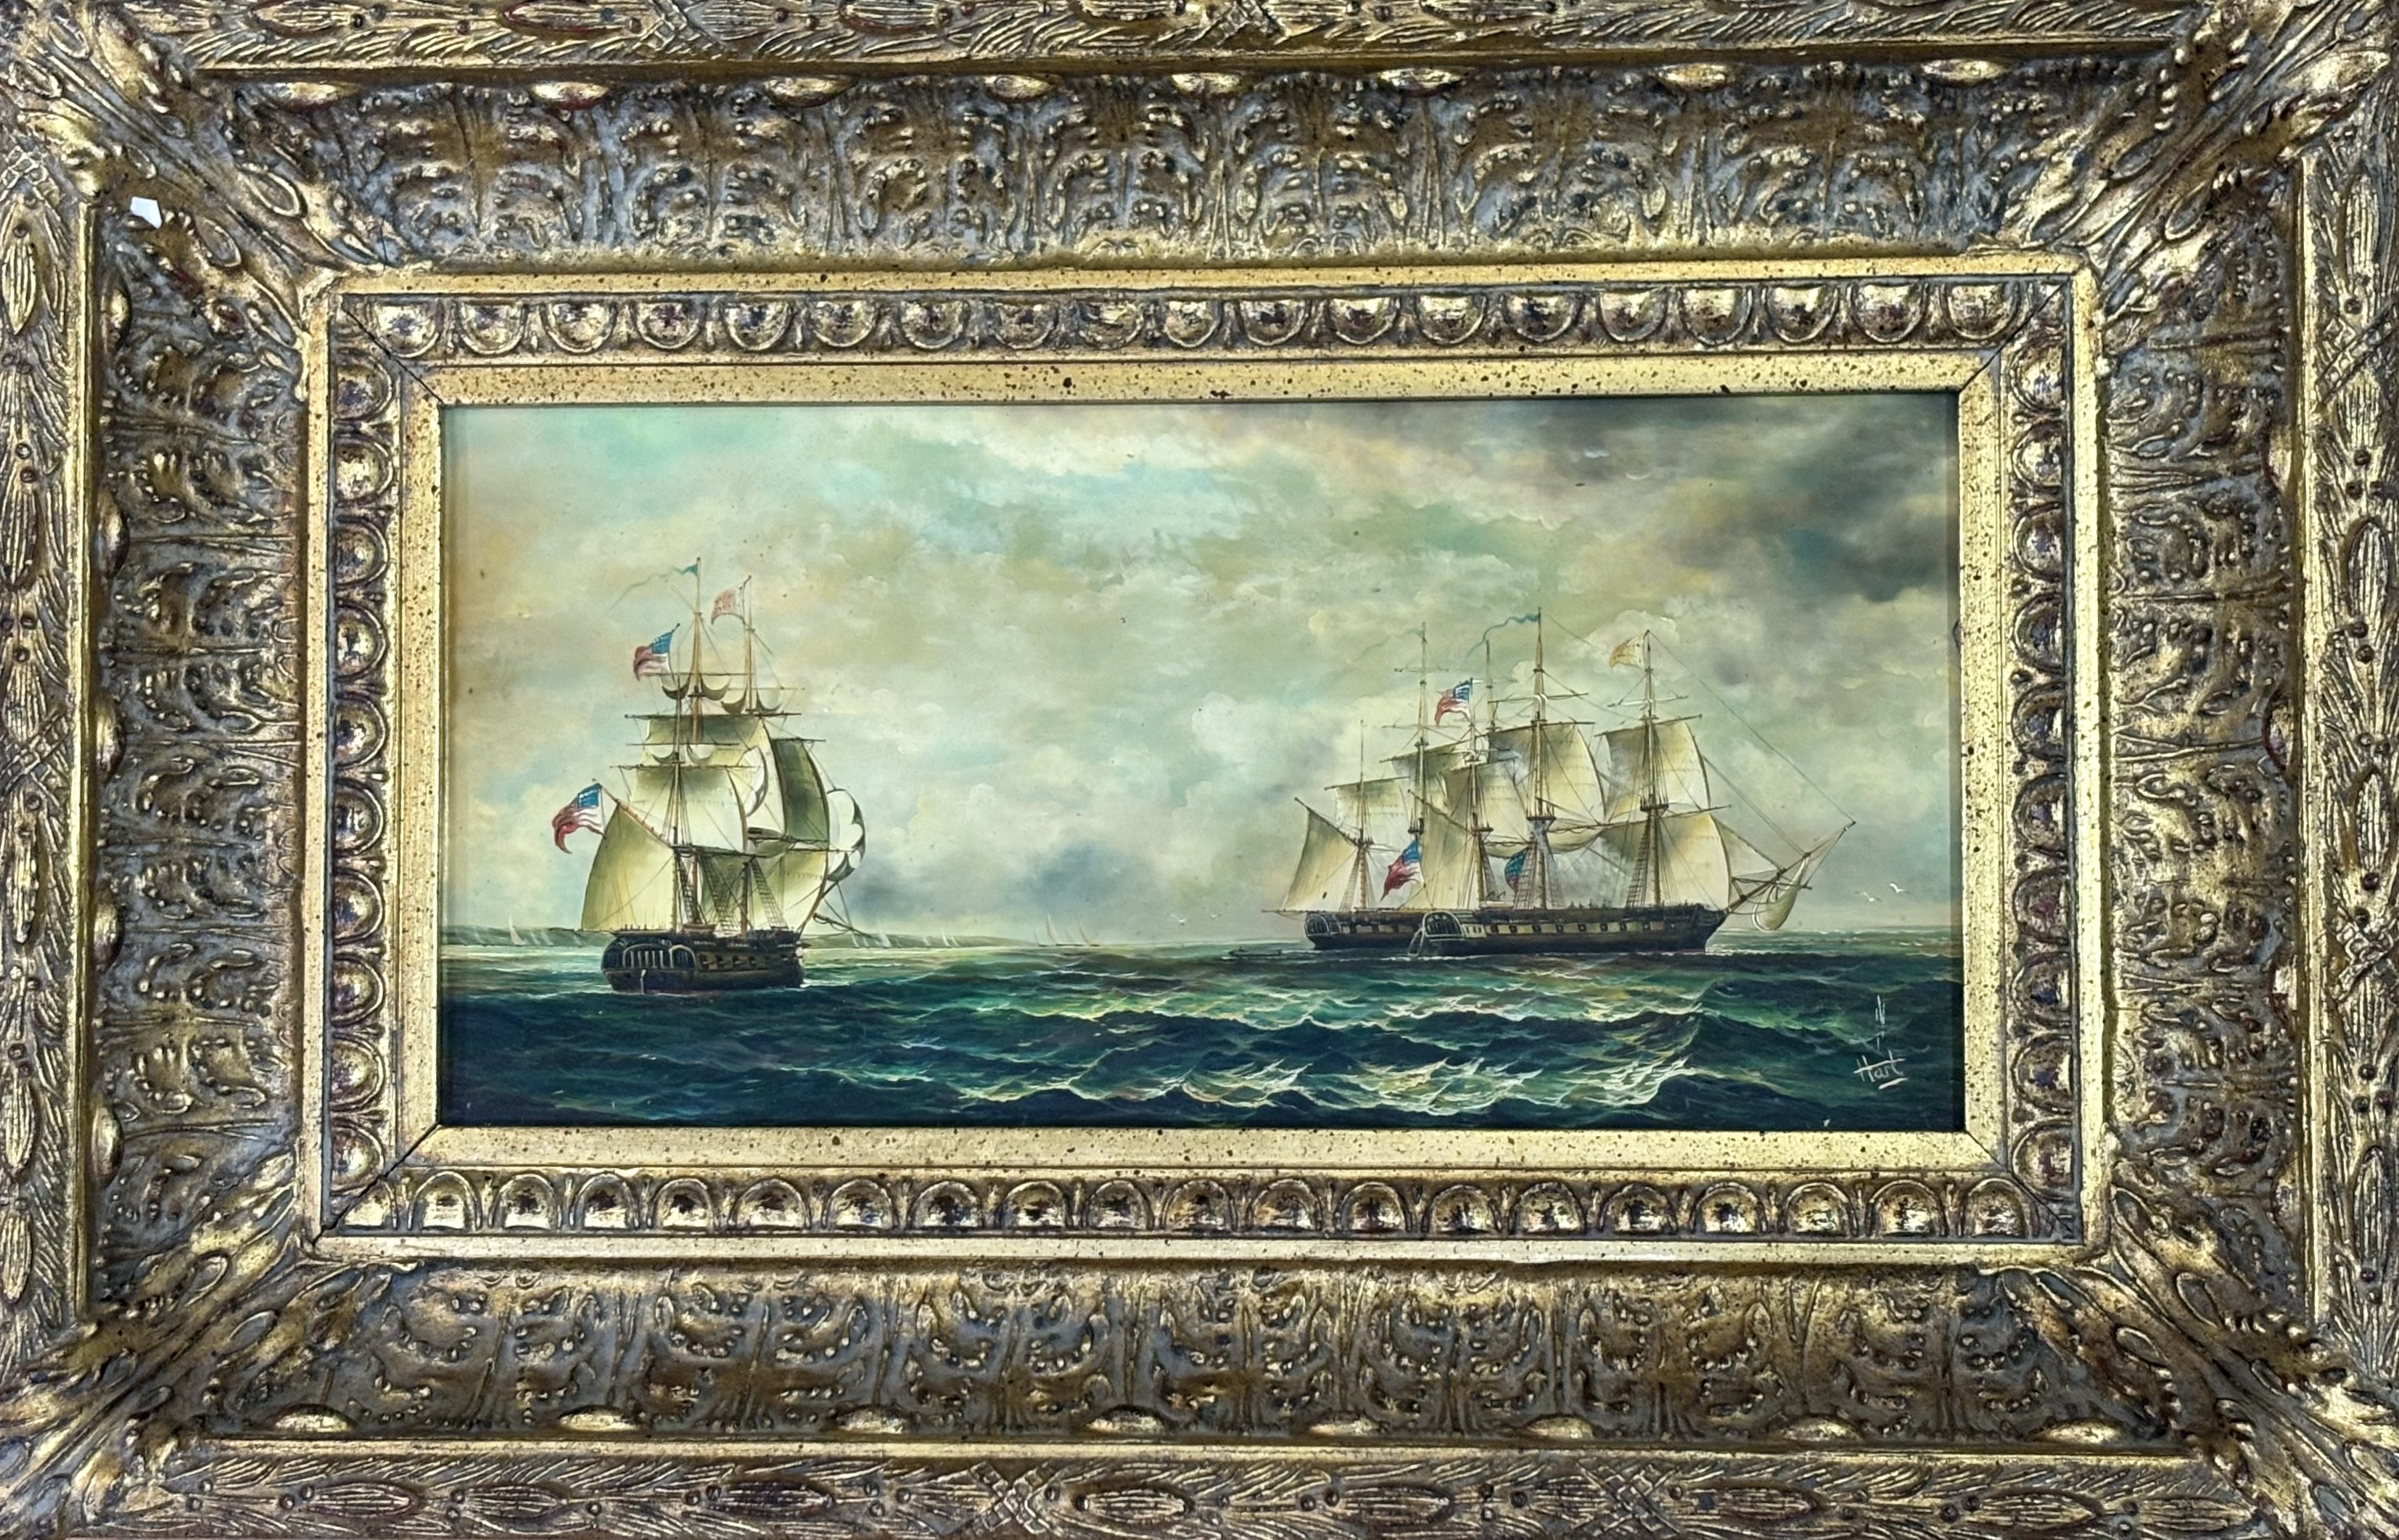 Hart, American master ships at sea